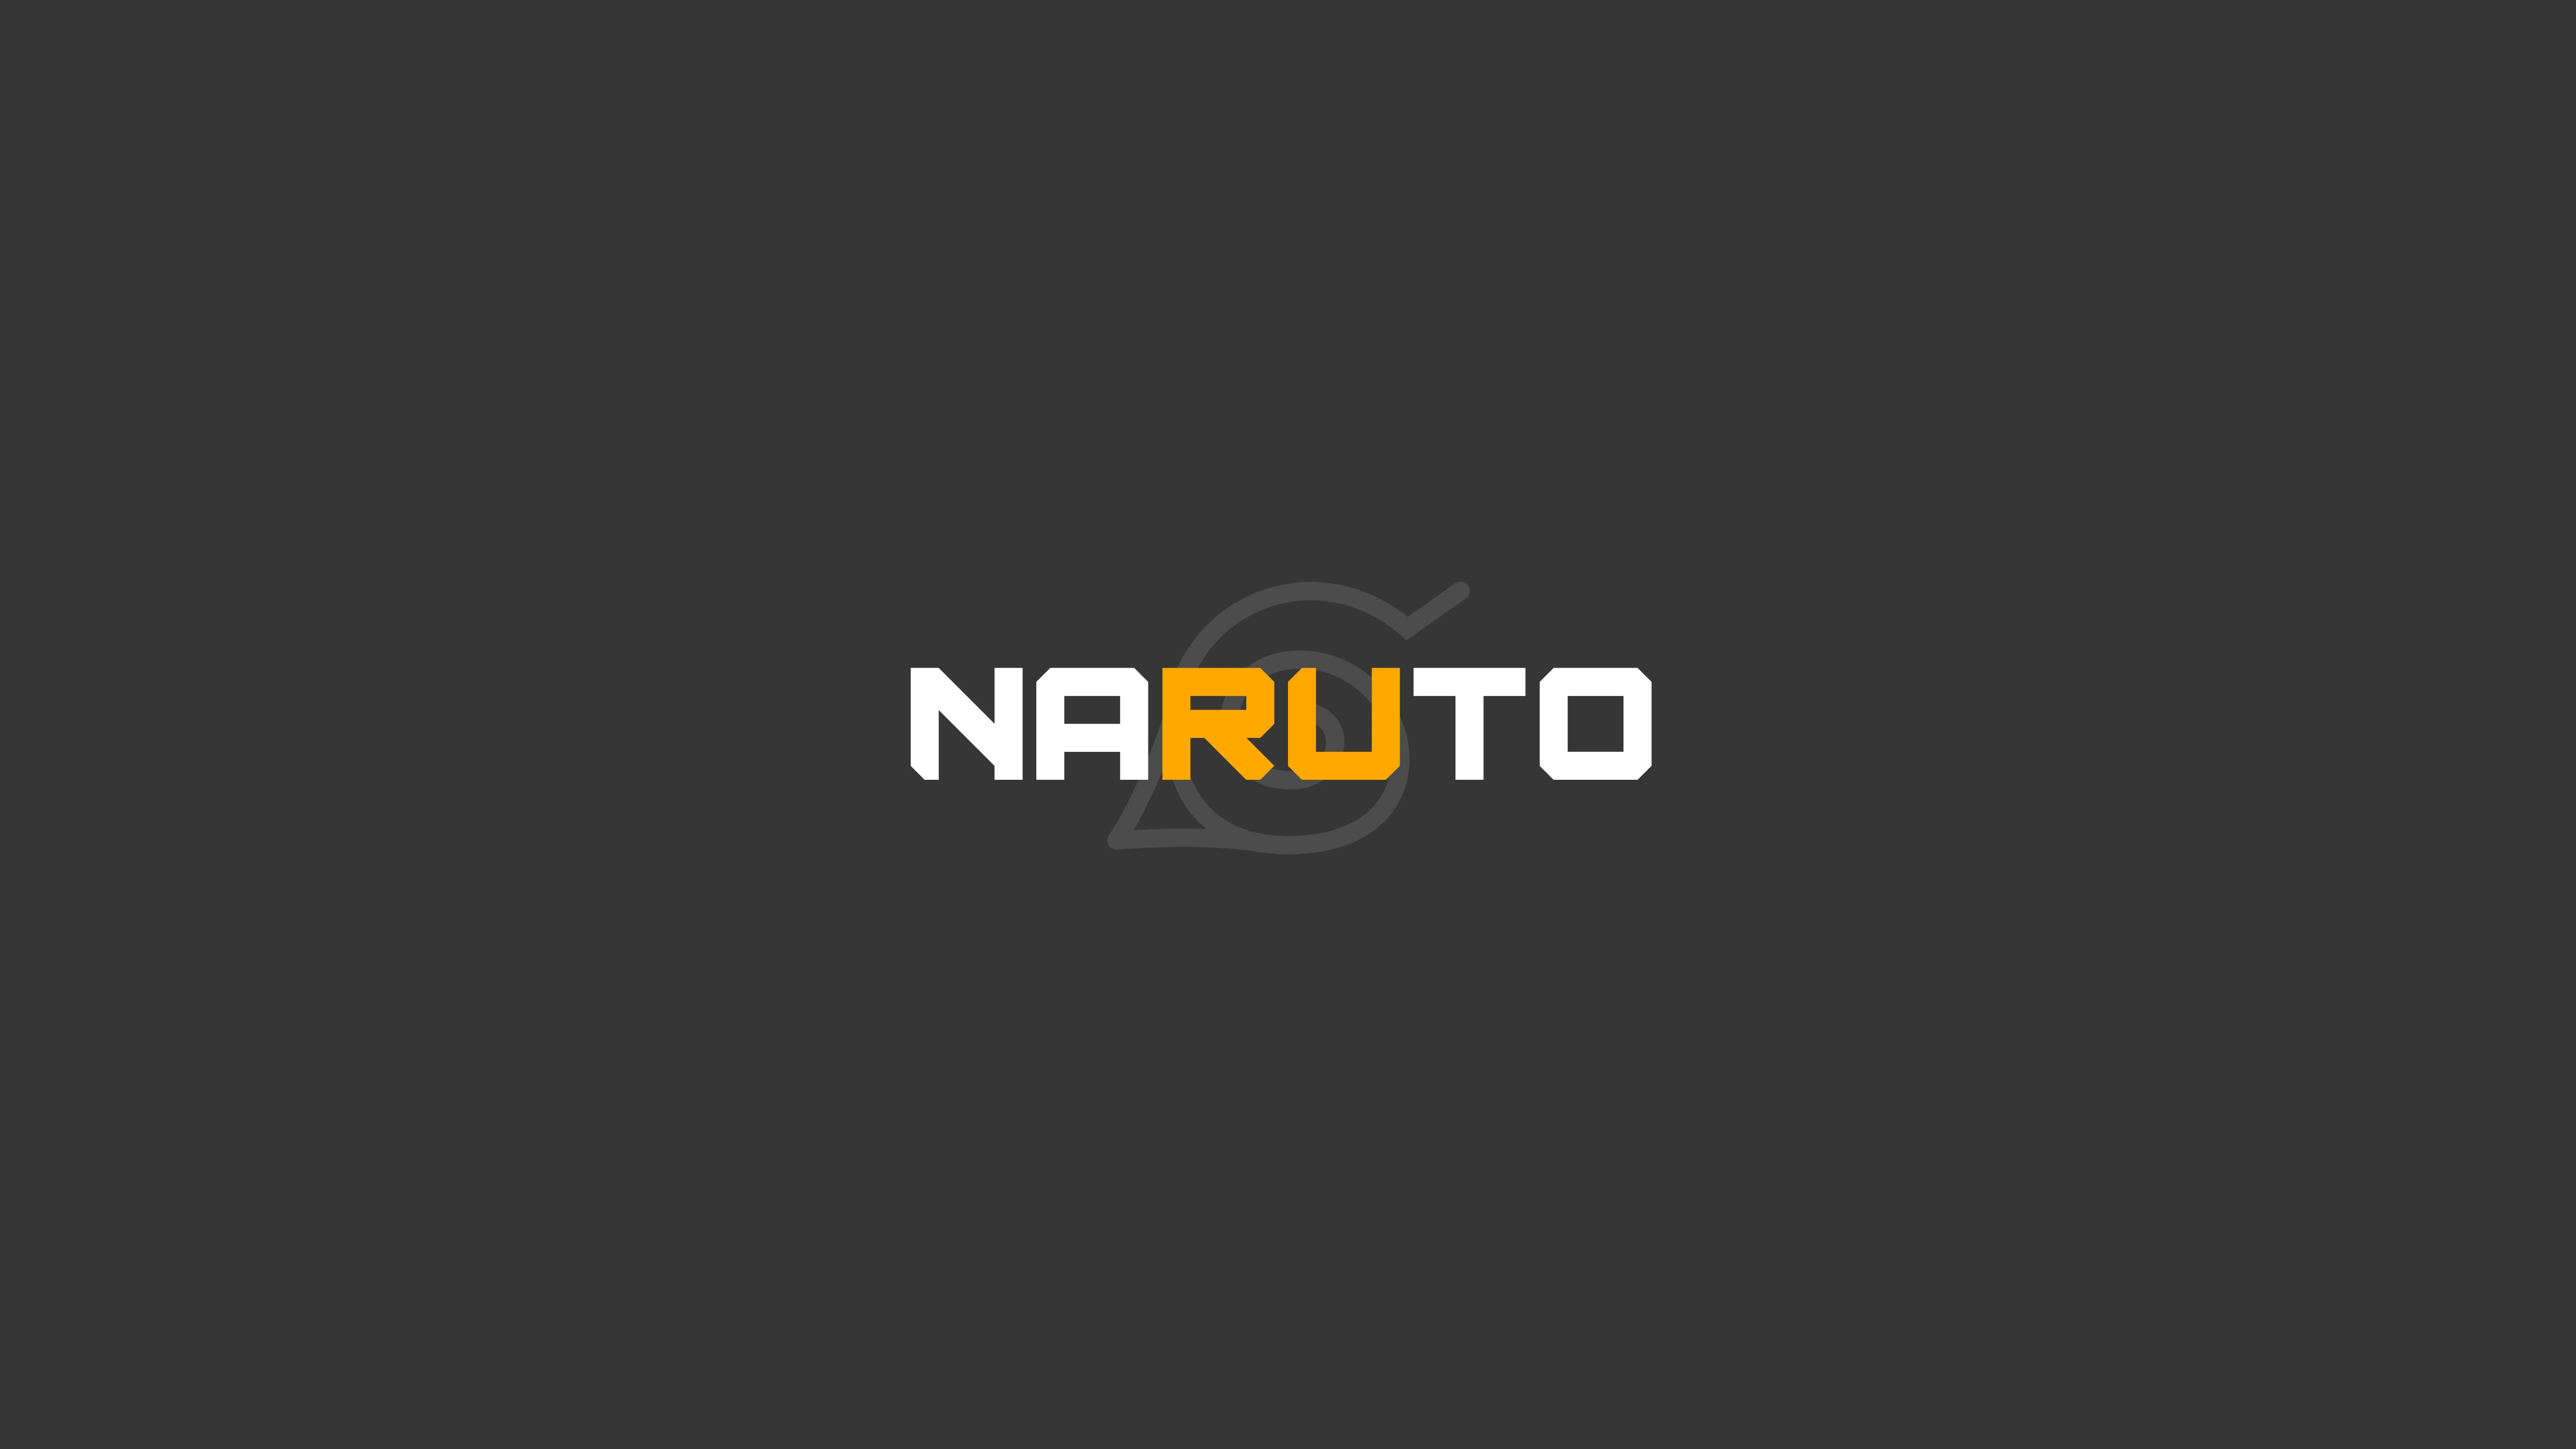 naruto hidden village logo minimal 4k 1696923219